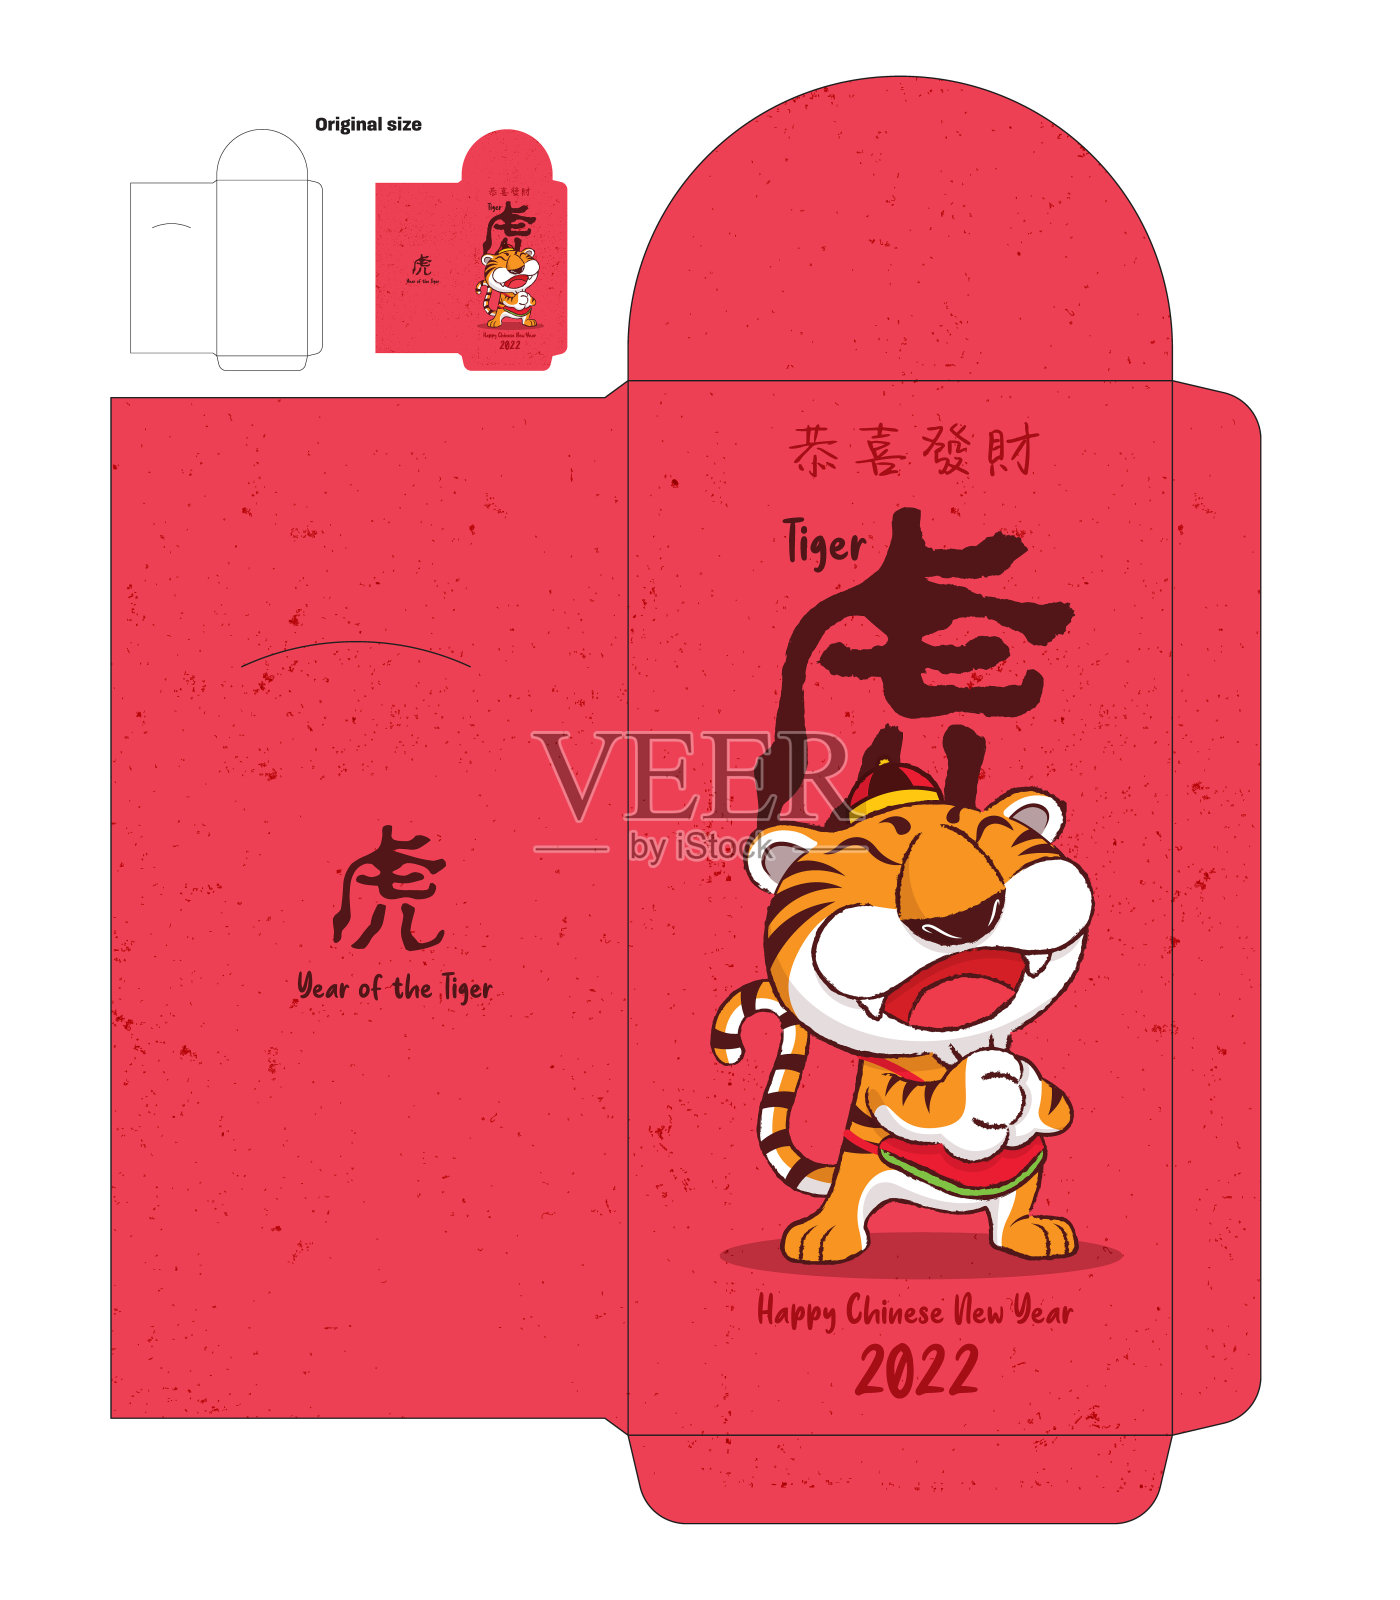 2022年春节快乐。卡通可爱的老虎红包设计模板。中国的红包。设计模板素材